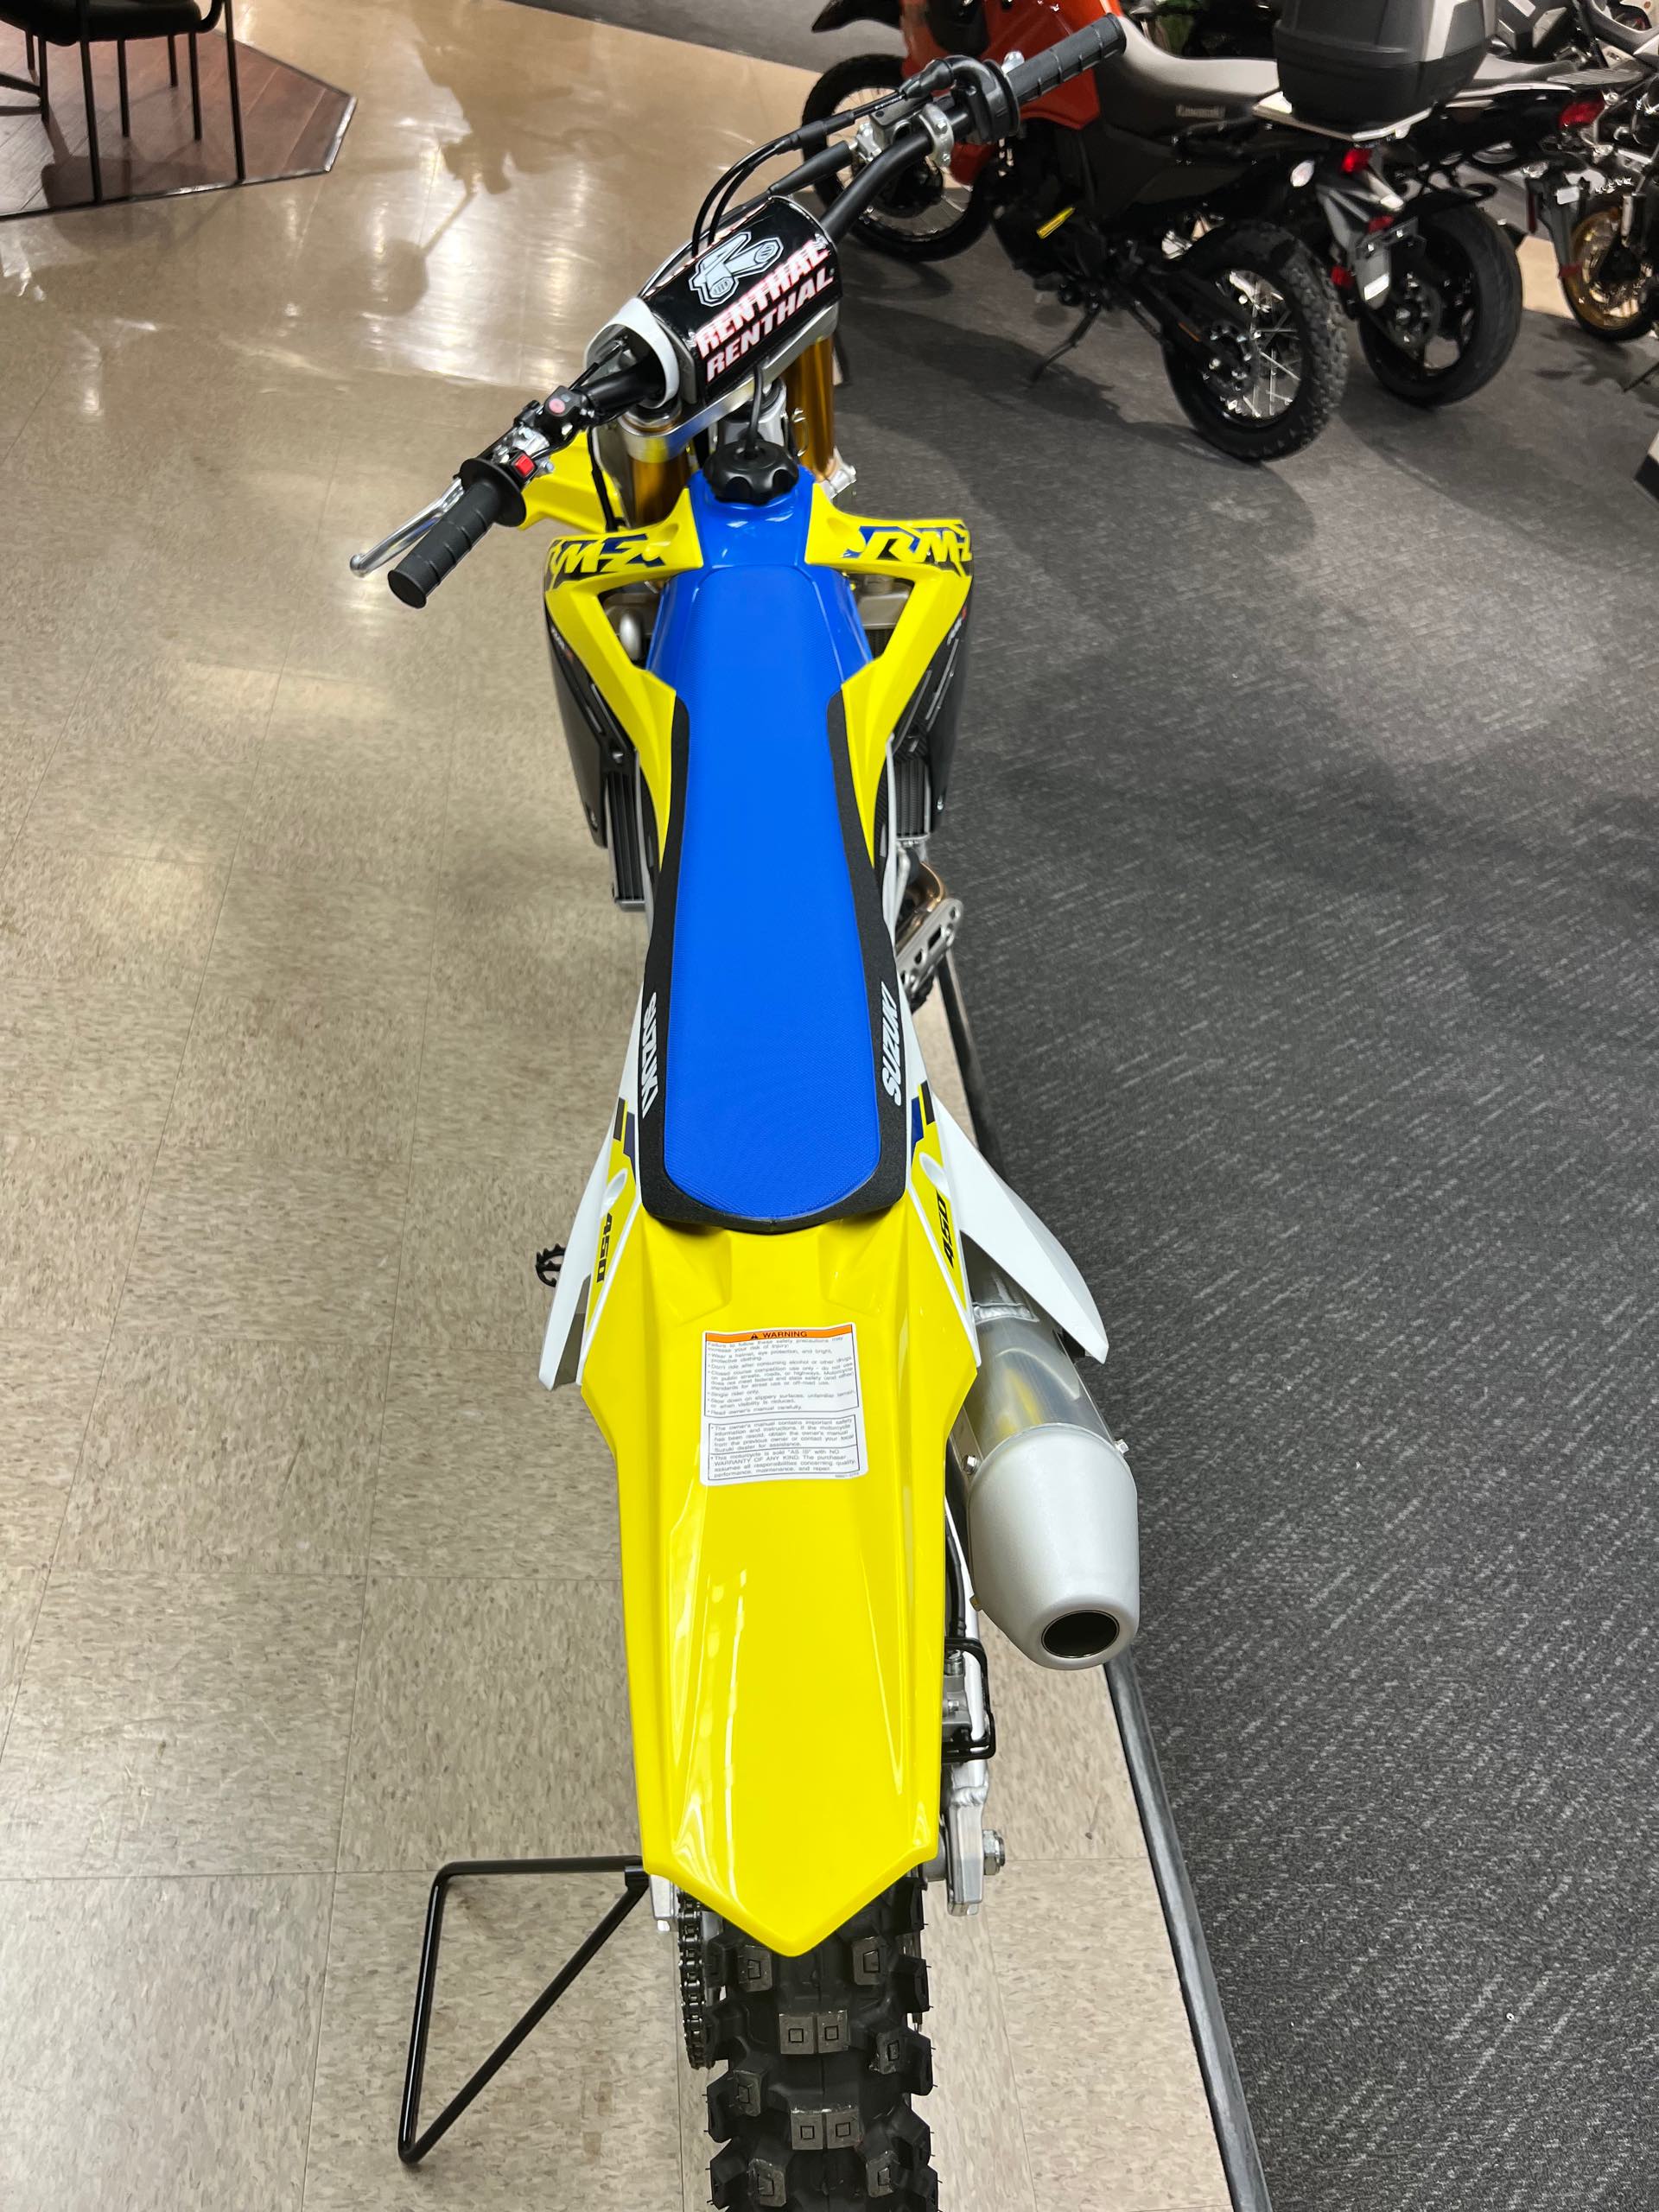 2023 Suzuki RM-Z 450 at Sloans Motorcycle ATV, Murfreesboro, TN, 37129